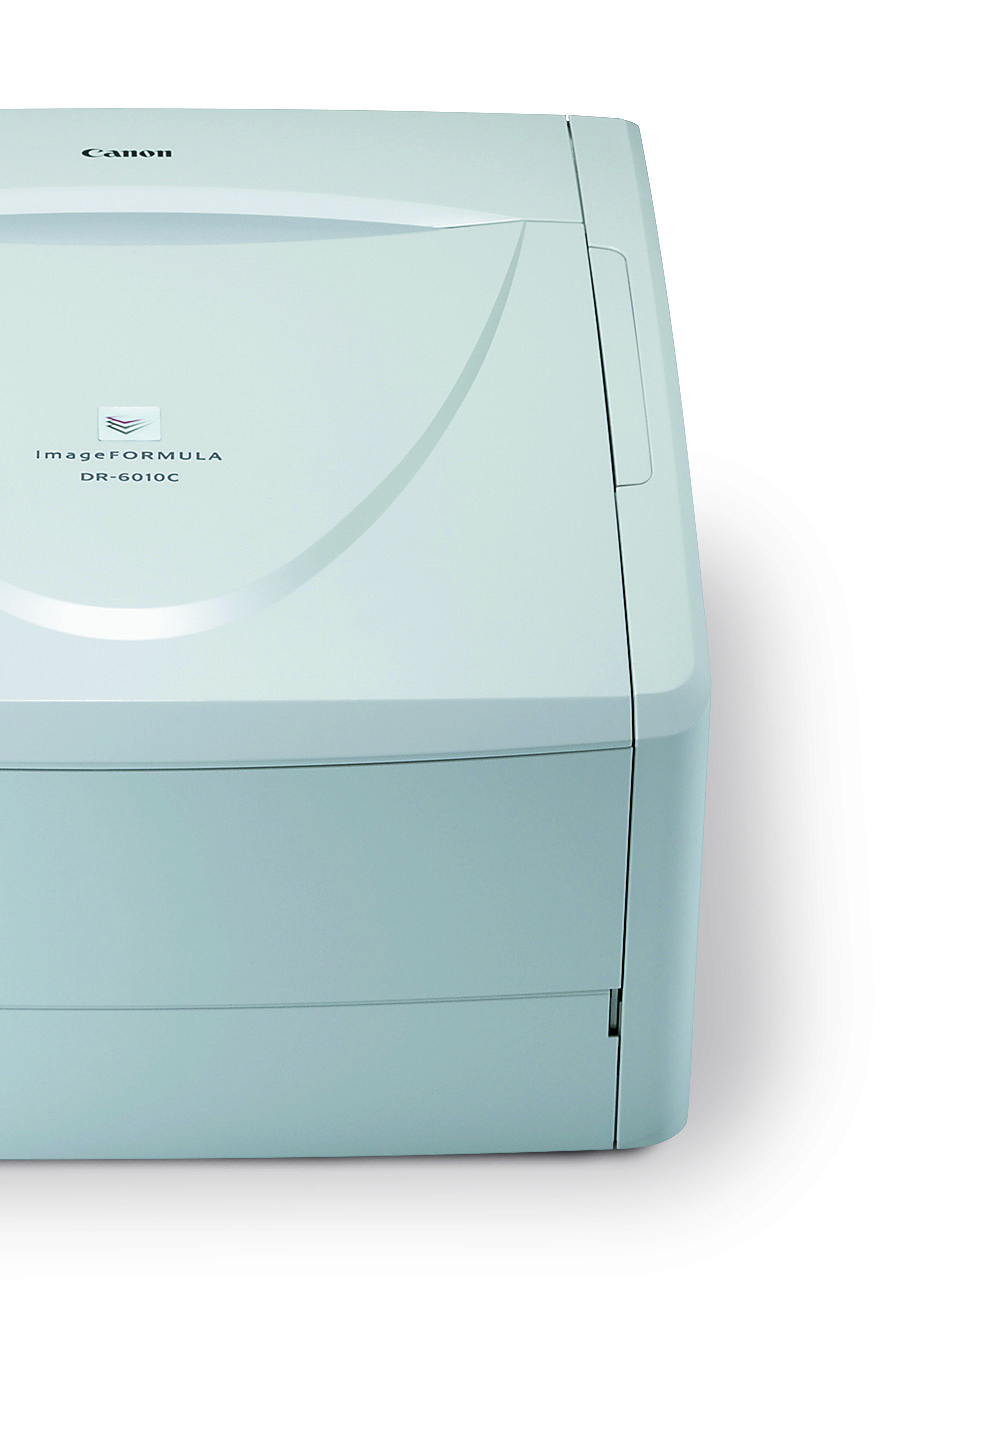 Piccoli ma prodighi di prestazioni. DR-6010C e DR-4010C sono due nuovi scanner grandi in fatto di prestazioni, ma non in quanto a dimensioni.